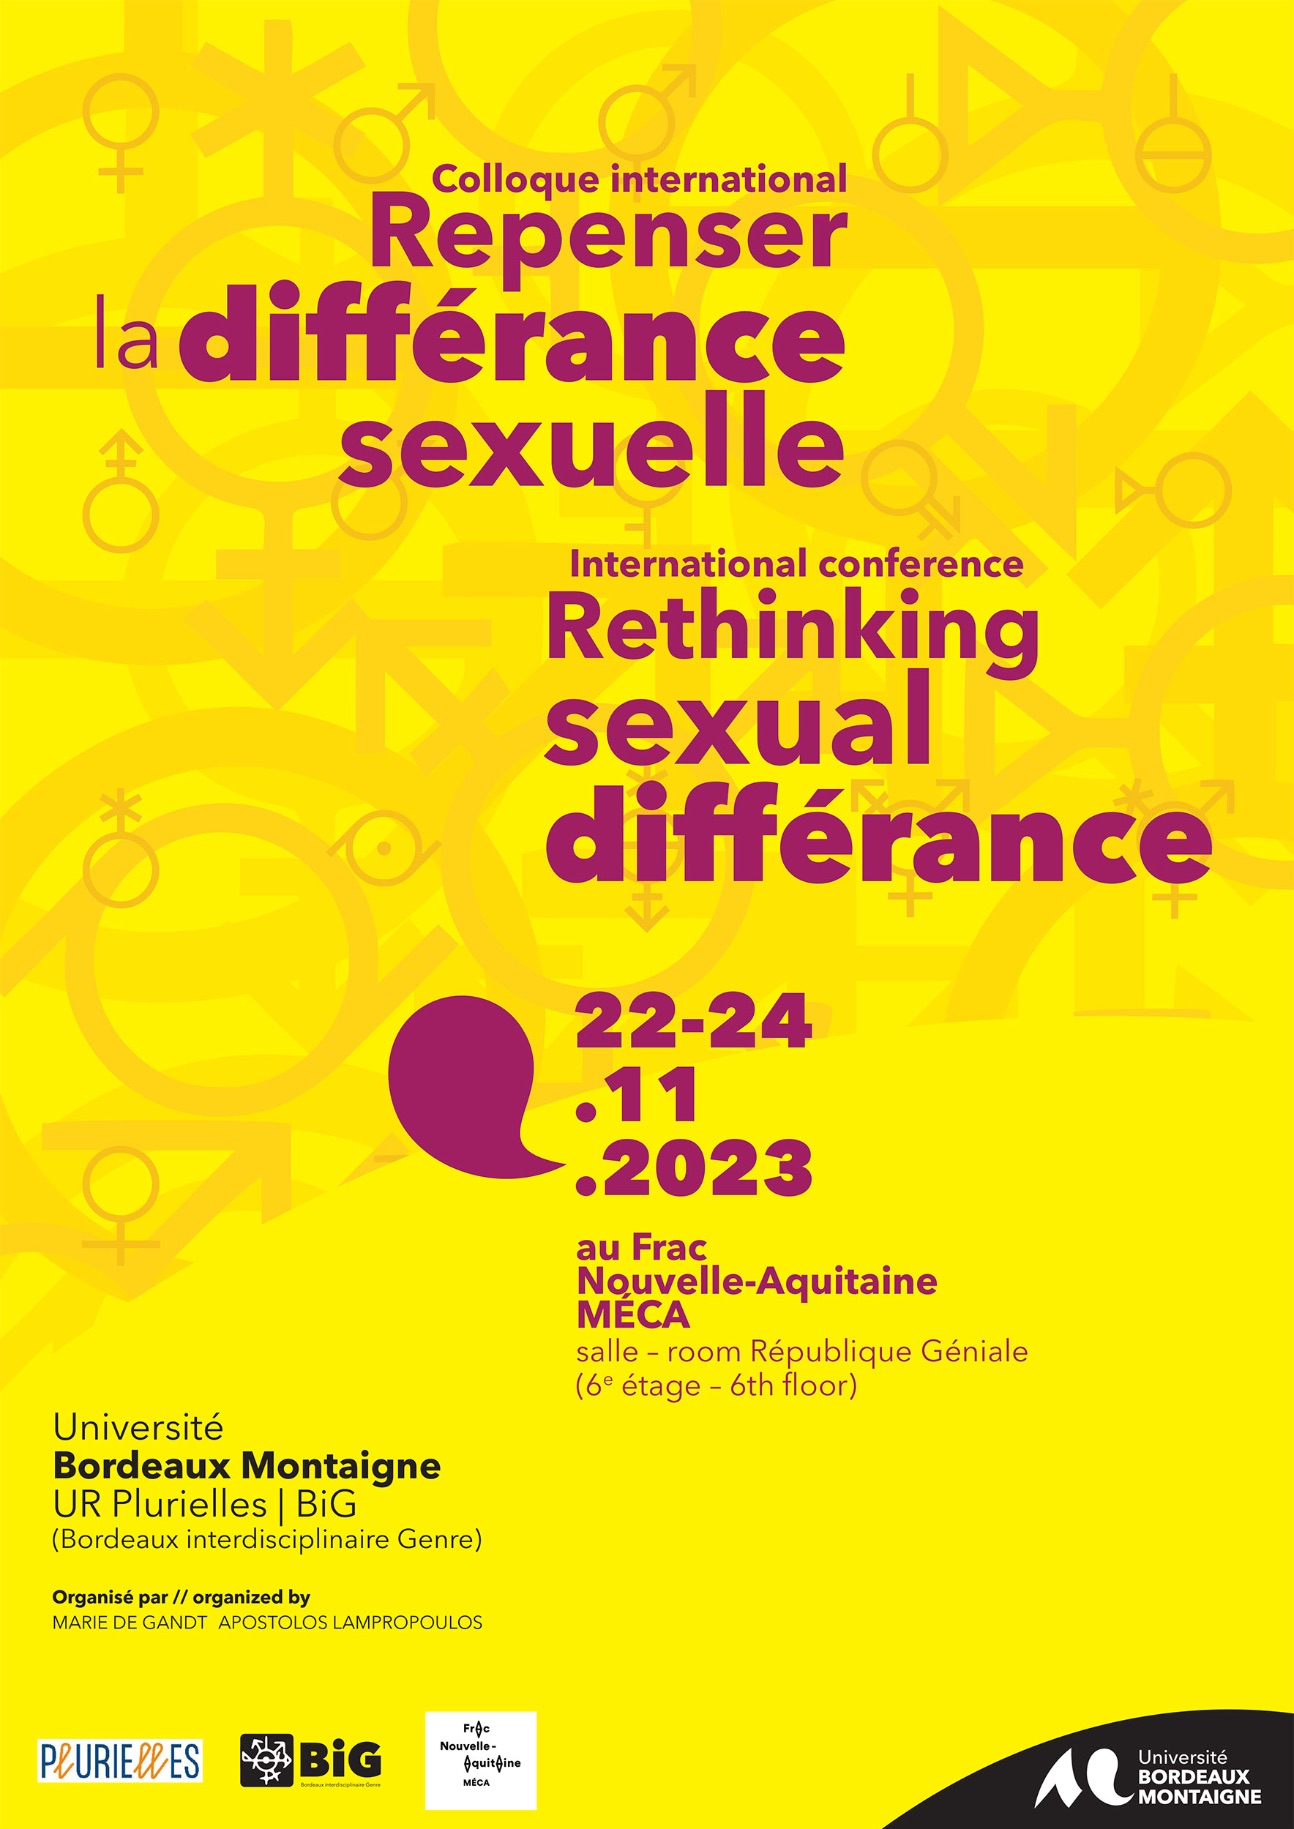 Repenser la différance sexuelle | Rethinking Sexual Différance (Bordeaux)